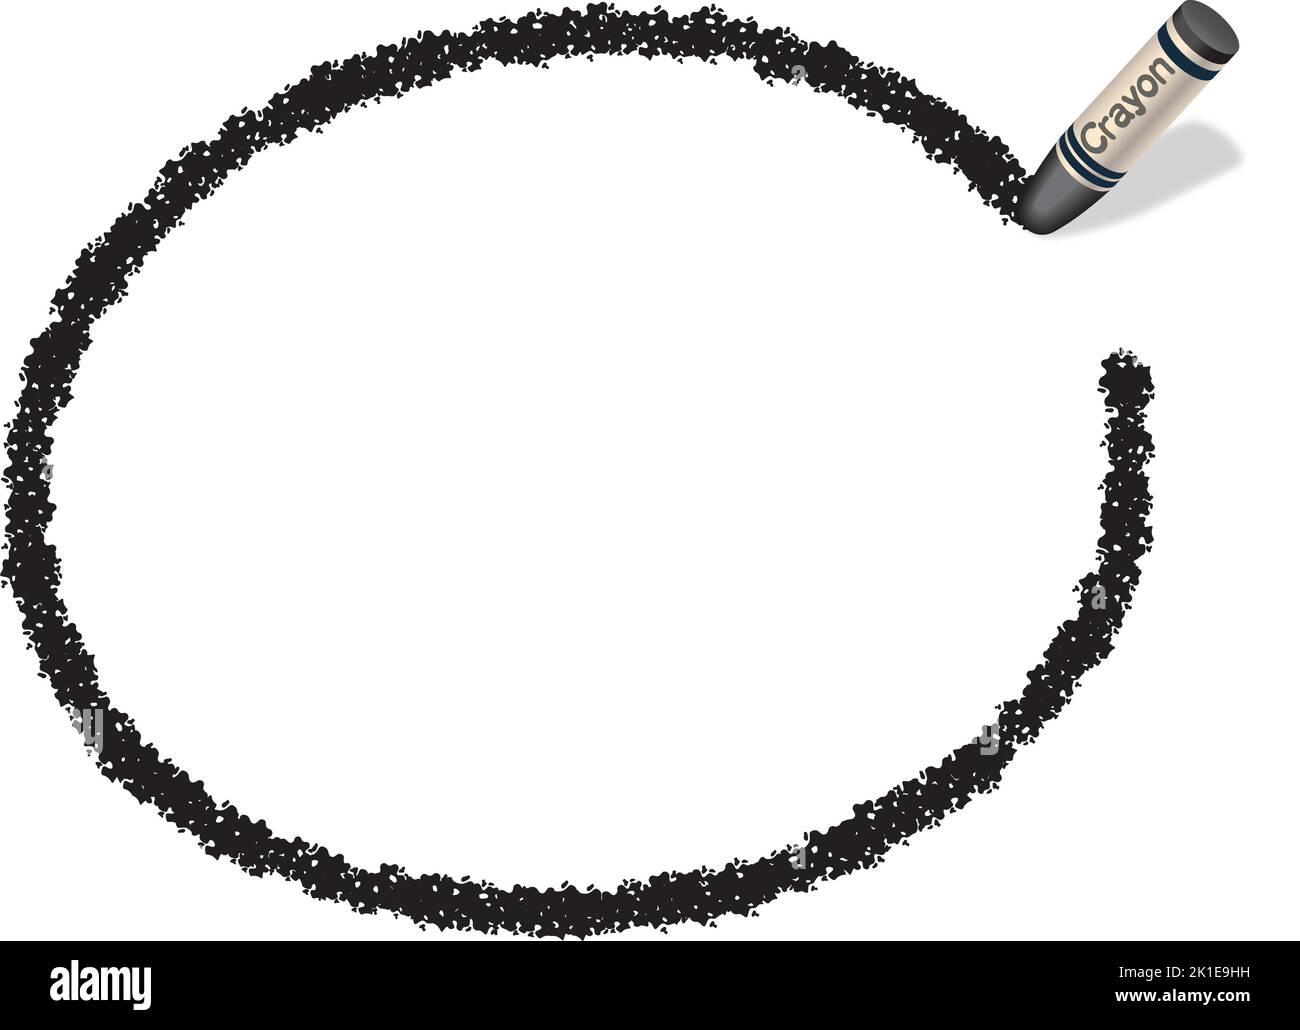 Vektor handgezeichneter schwarzer ovaler Crayon-Texturrahmen isoliert auf Weißem Hintergrund. Stock Vektor